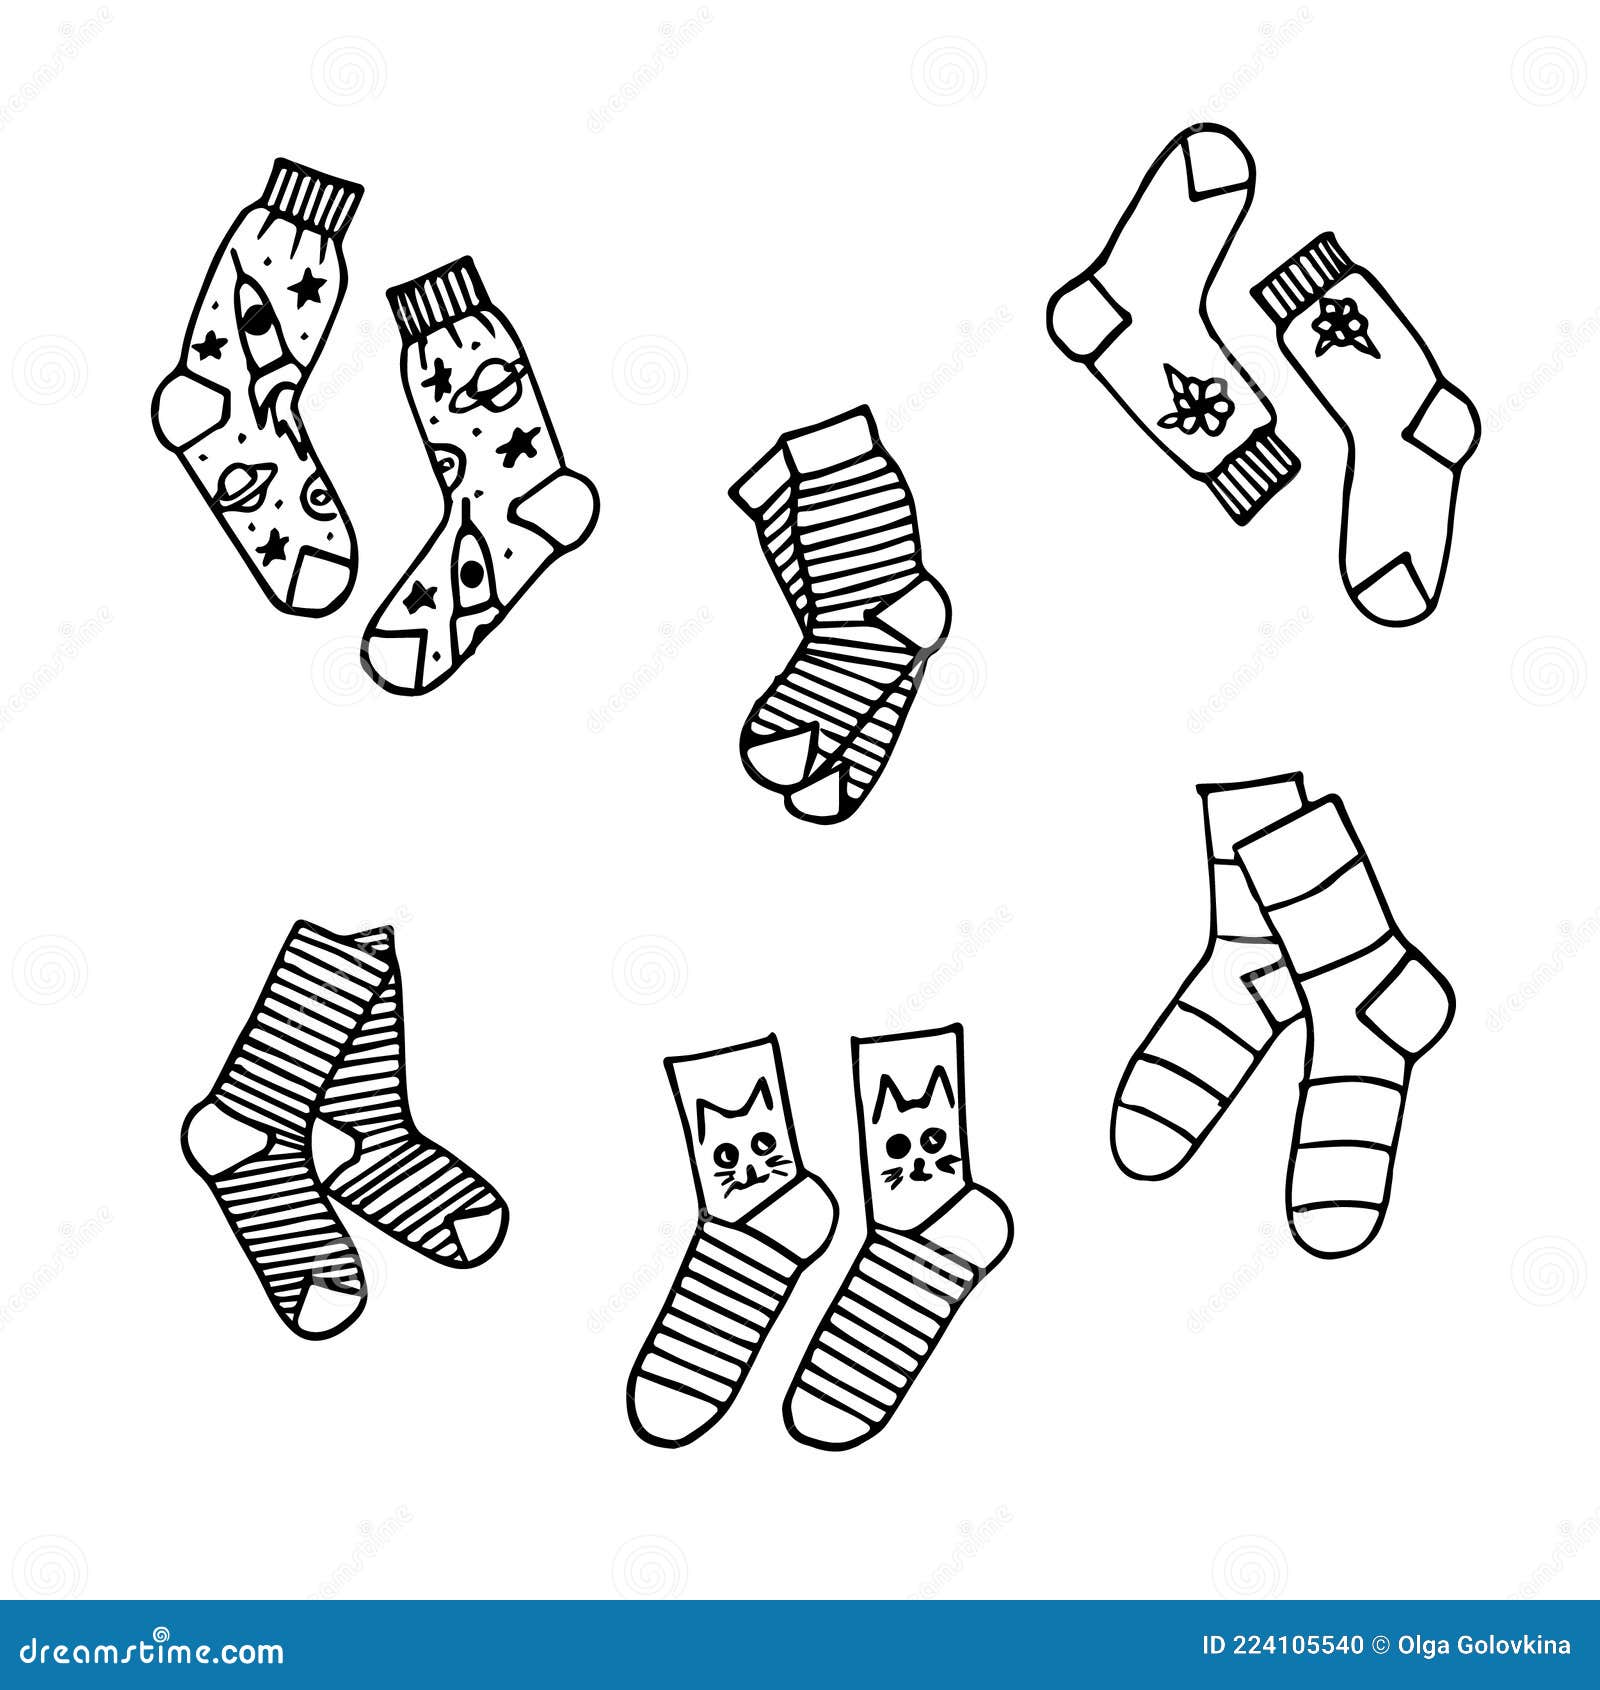 Manual de uso de los calcetines con dibujos